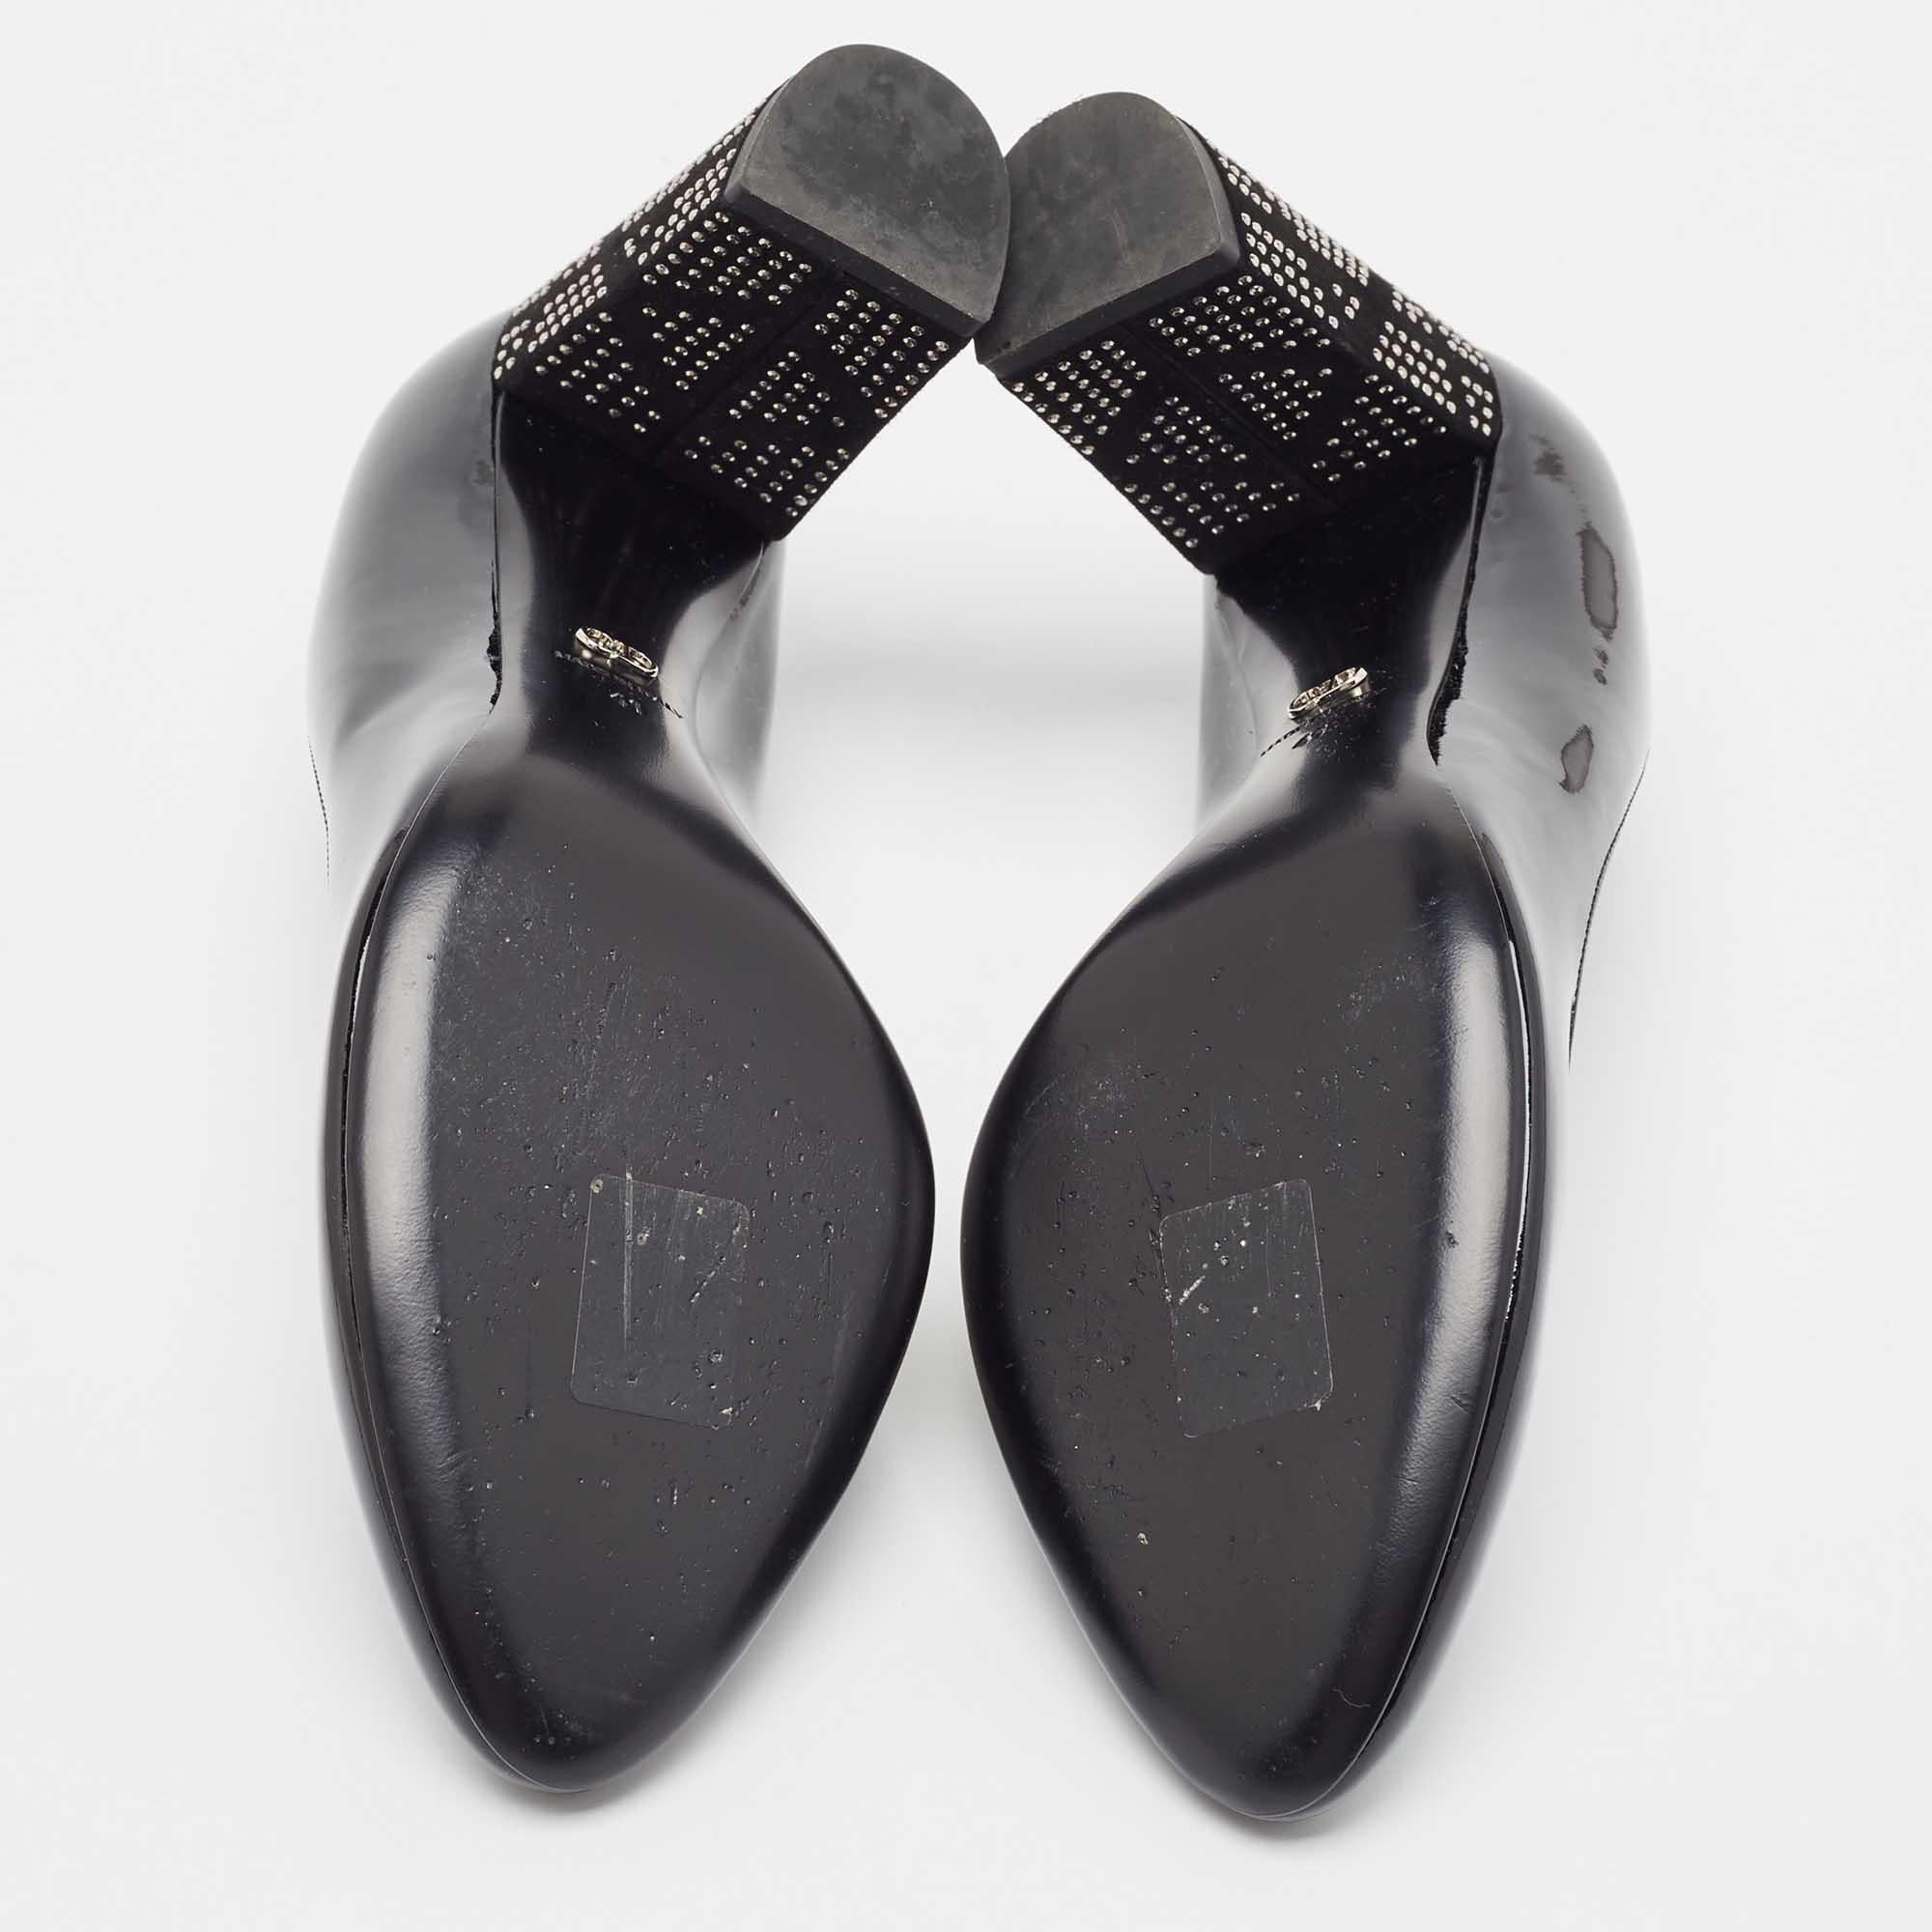 Dior Black Patent Leather Embellished Block Heel Pumps Size 41 2